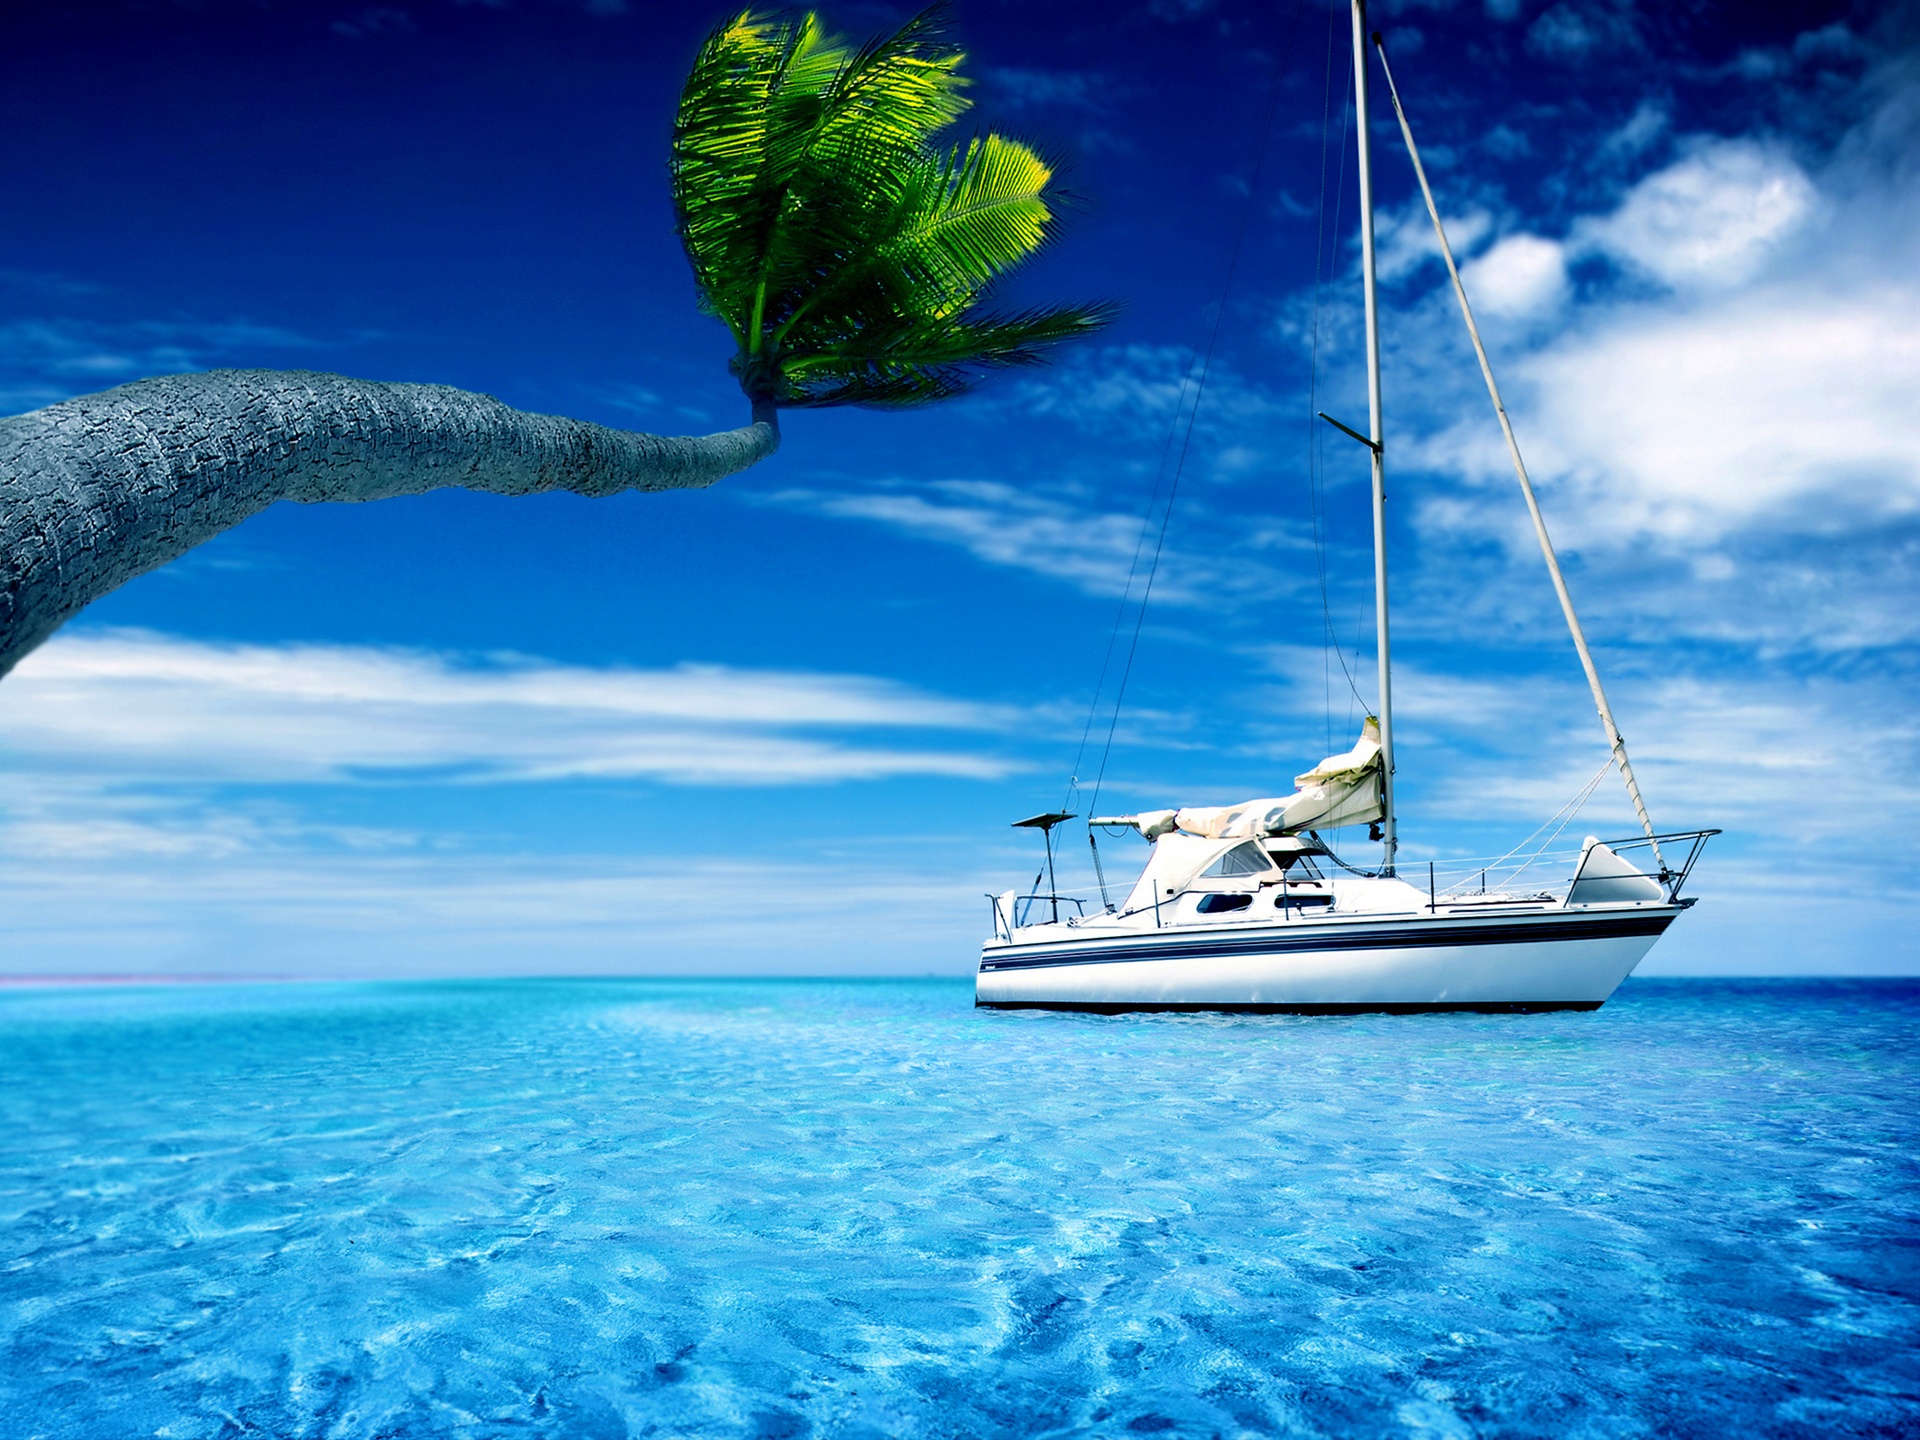 migliore carta da parati ad acqua,barca,cielo,acqua,oceano,yacht